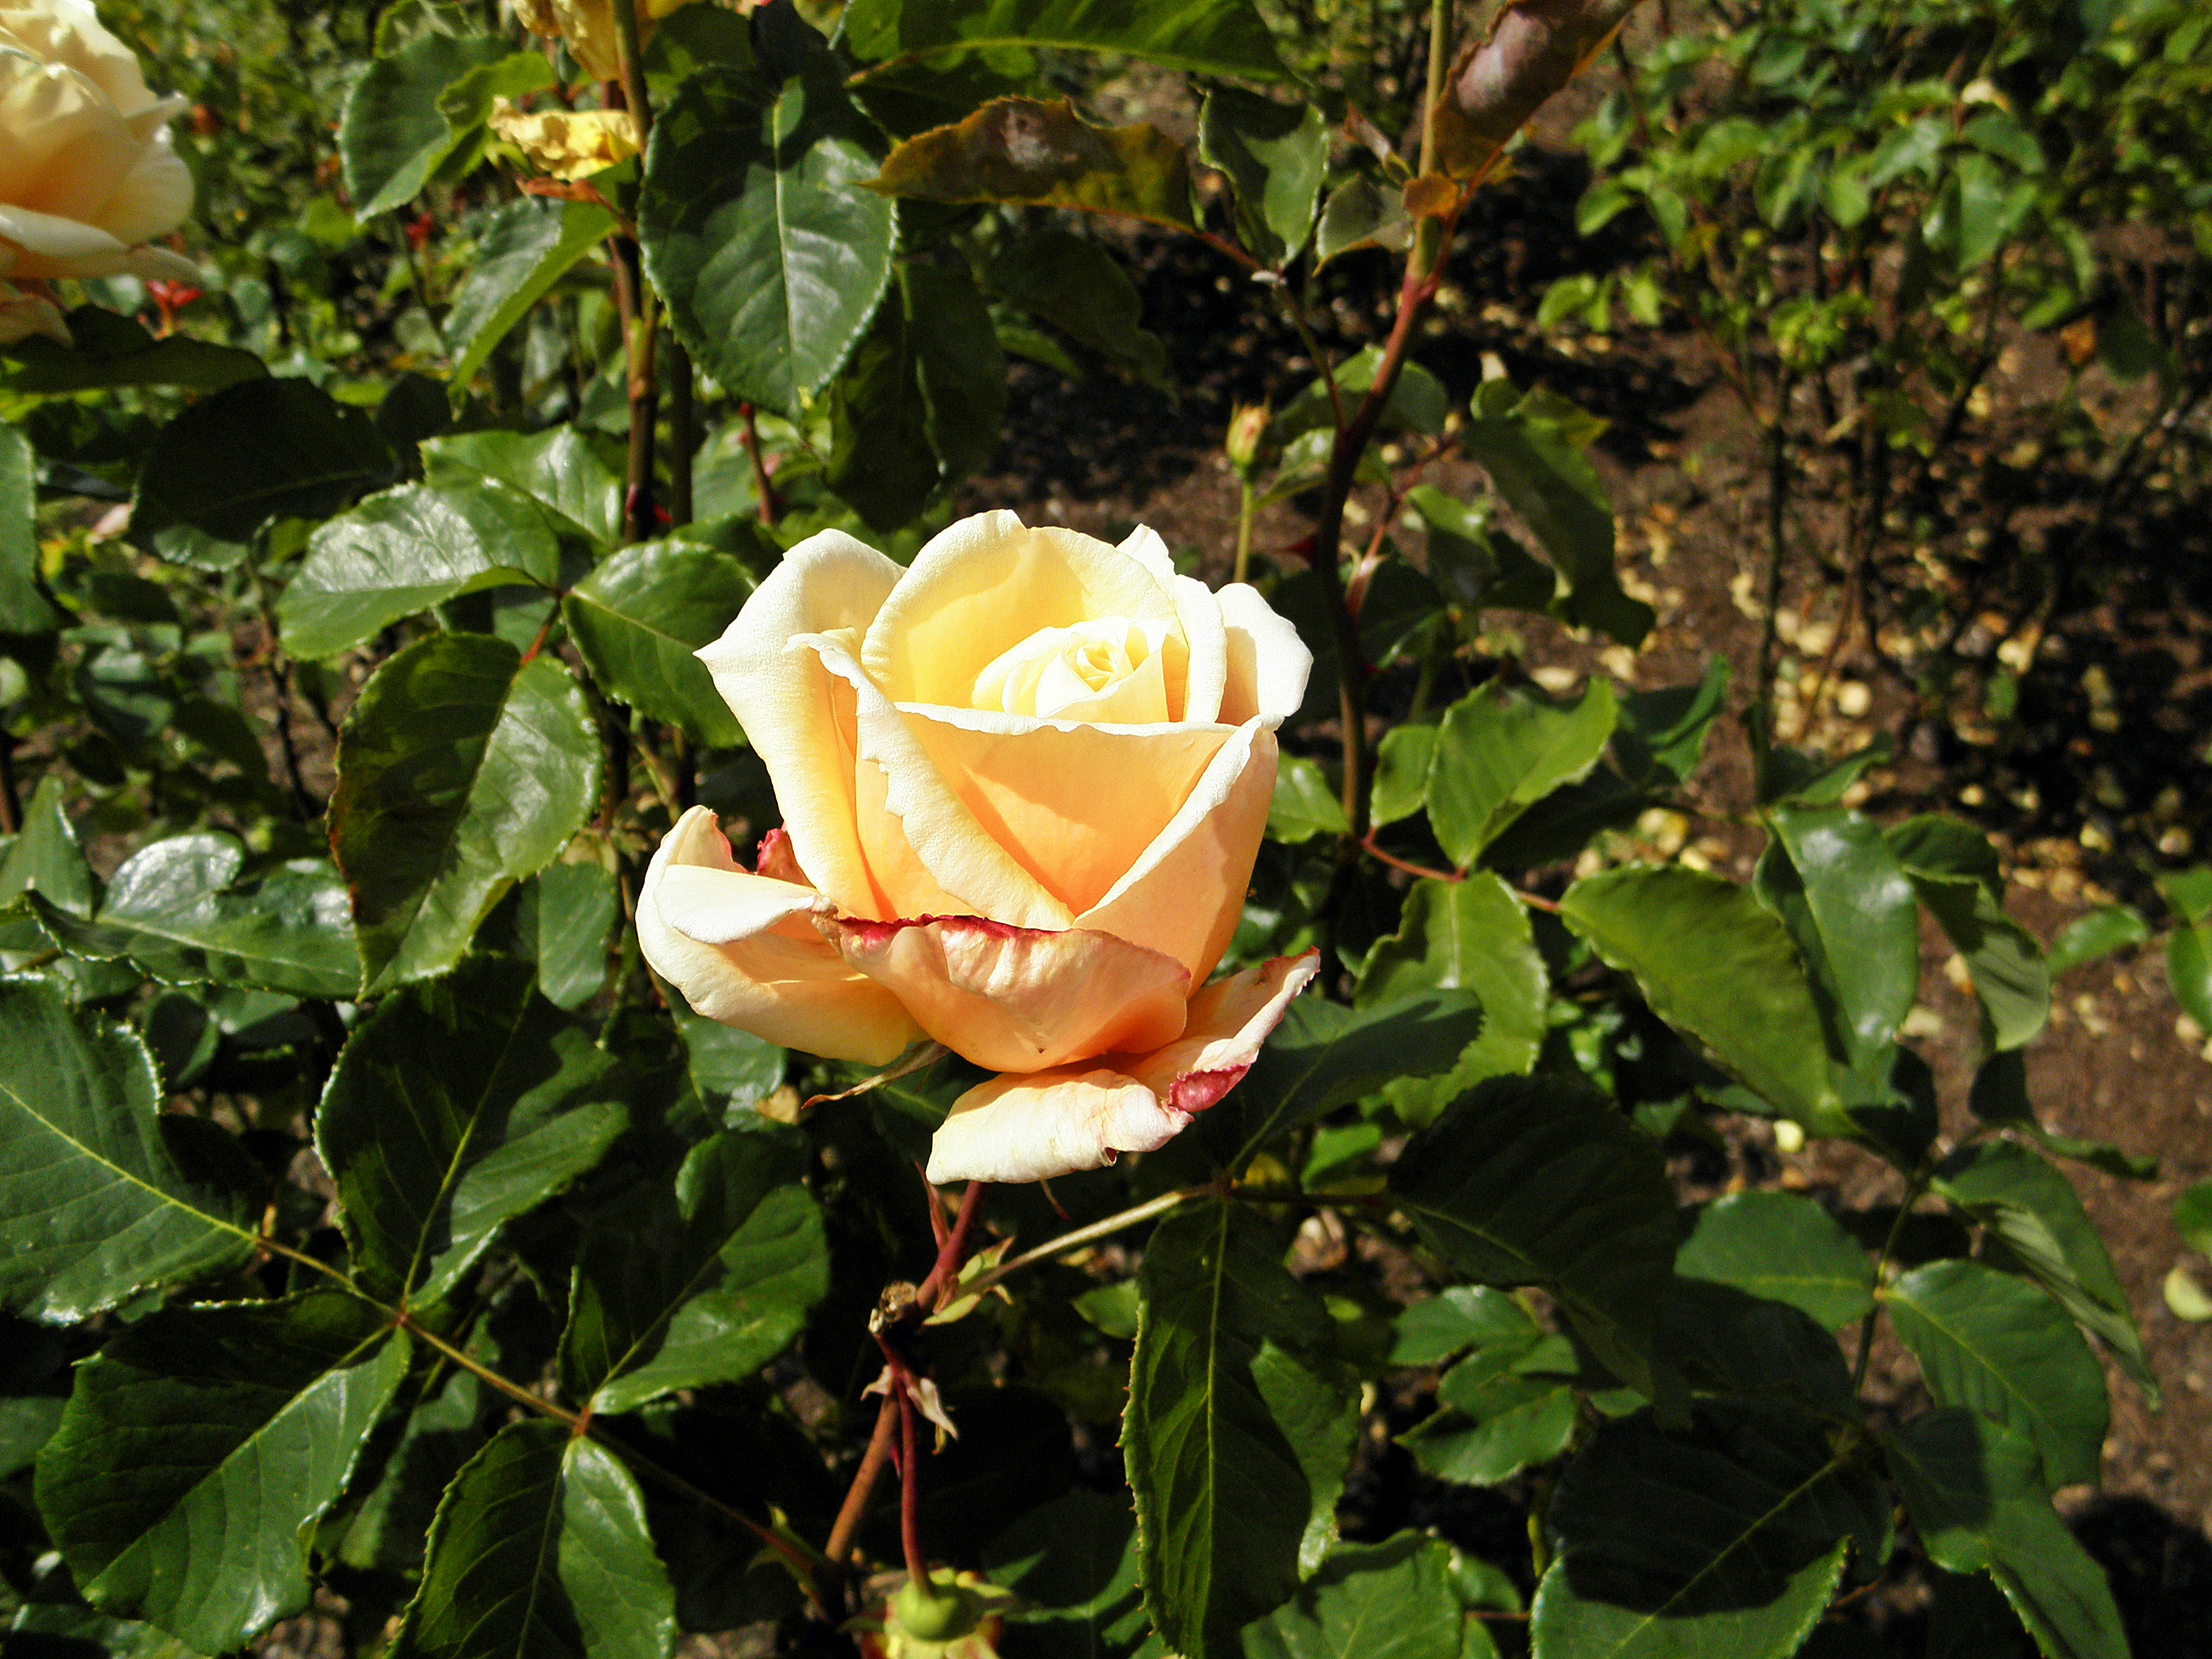 Даймонд джубили роза фото и описание